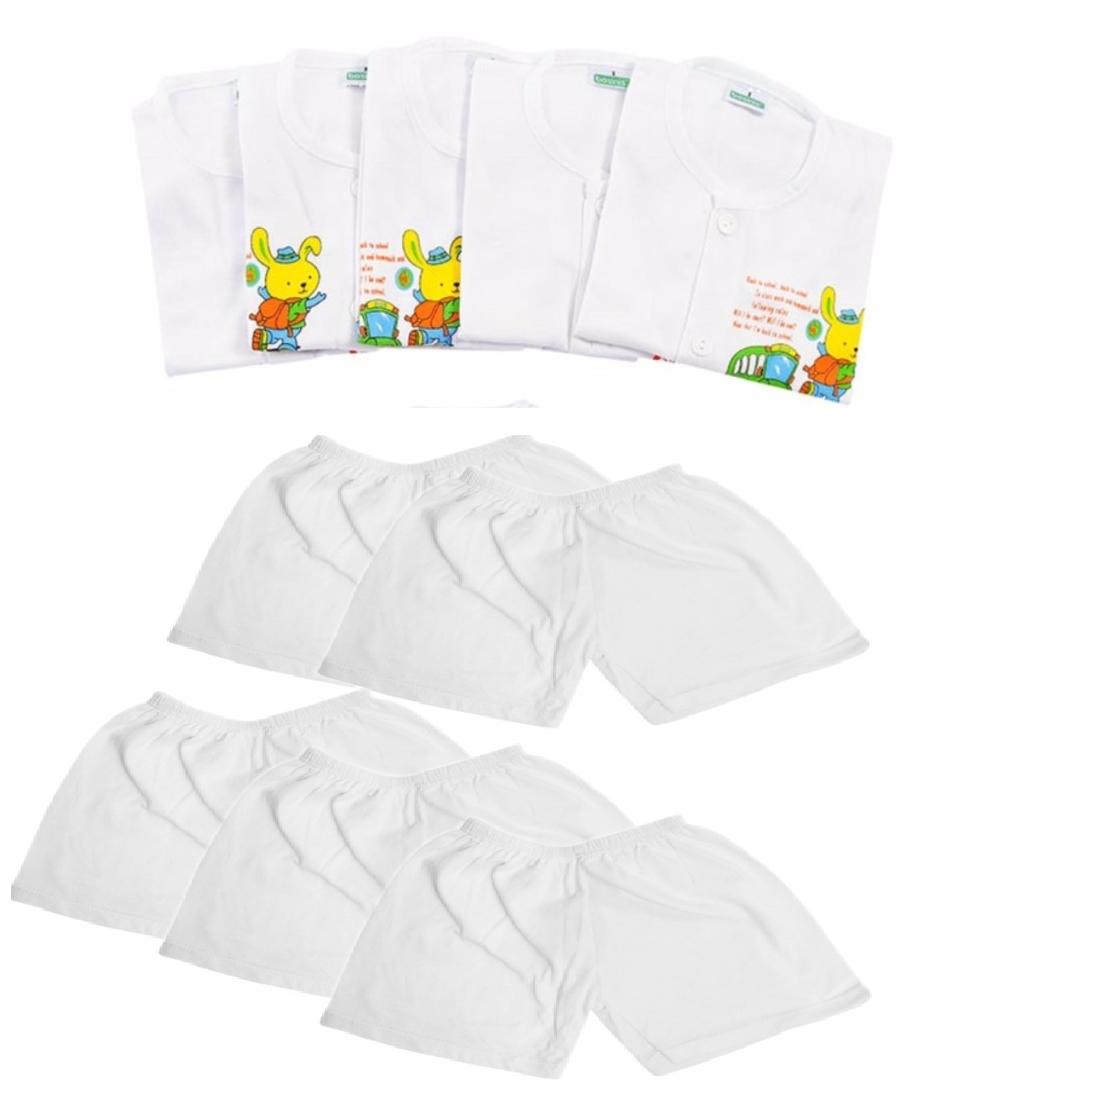 HCMSet 5 Bộ quần áo ngắn tay cúc giữa 100% cotton màu trắng cho bé từ